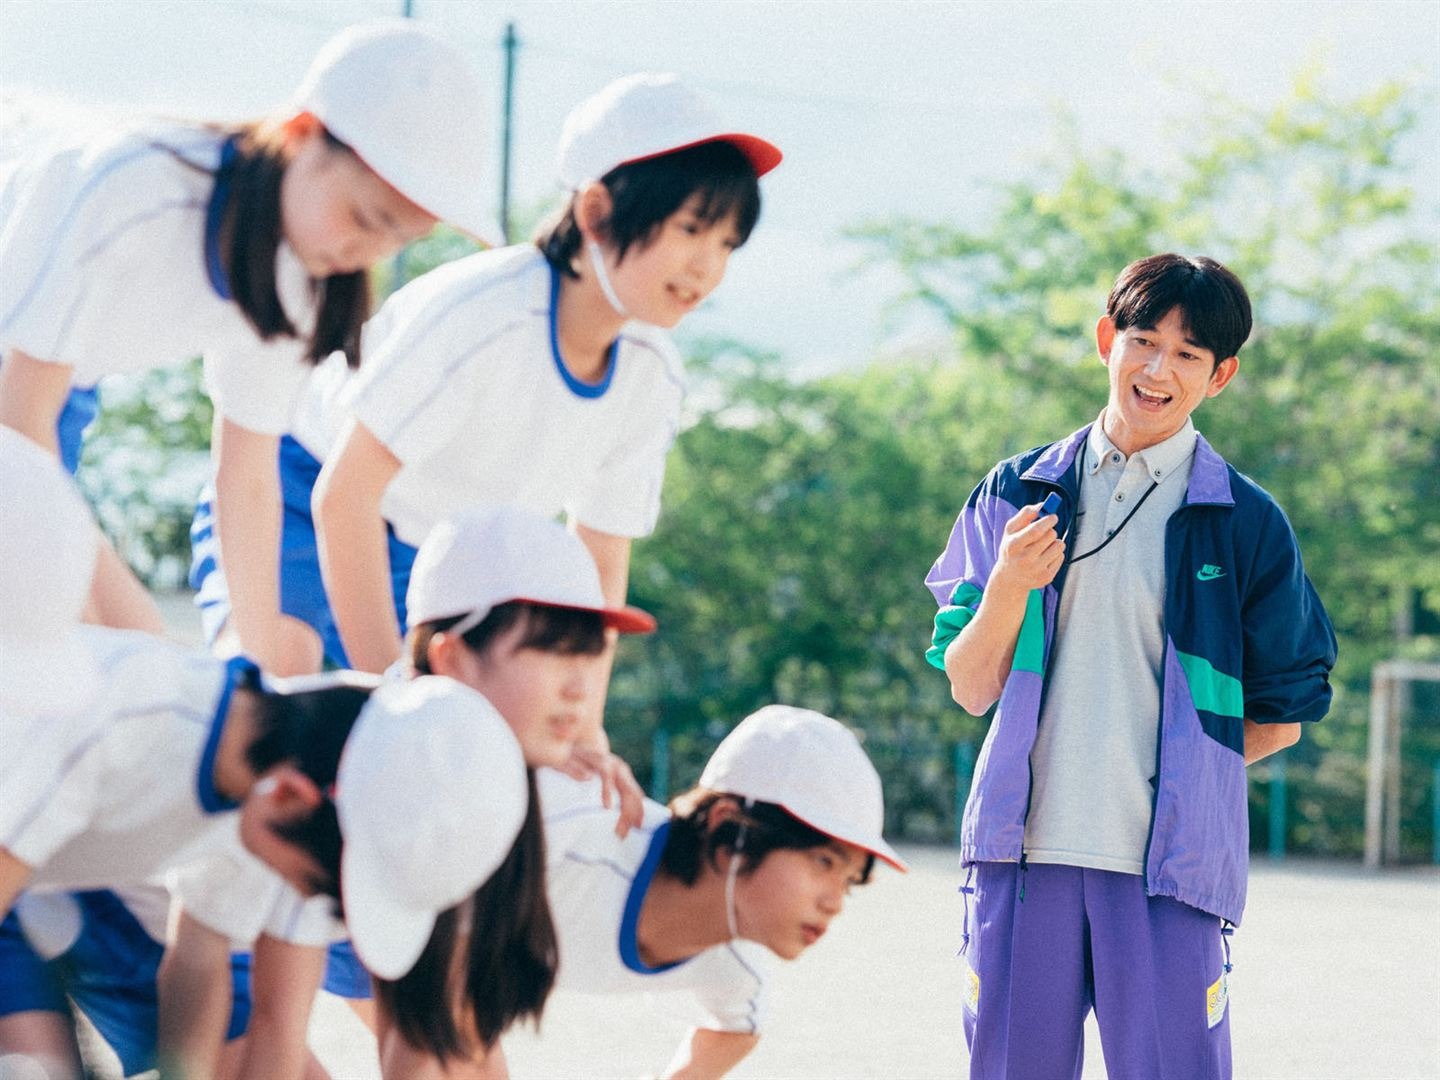 Eita Nagayama en professeur face à des écoliers dans L'Innocence